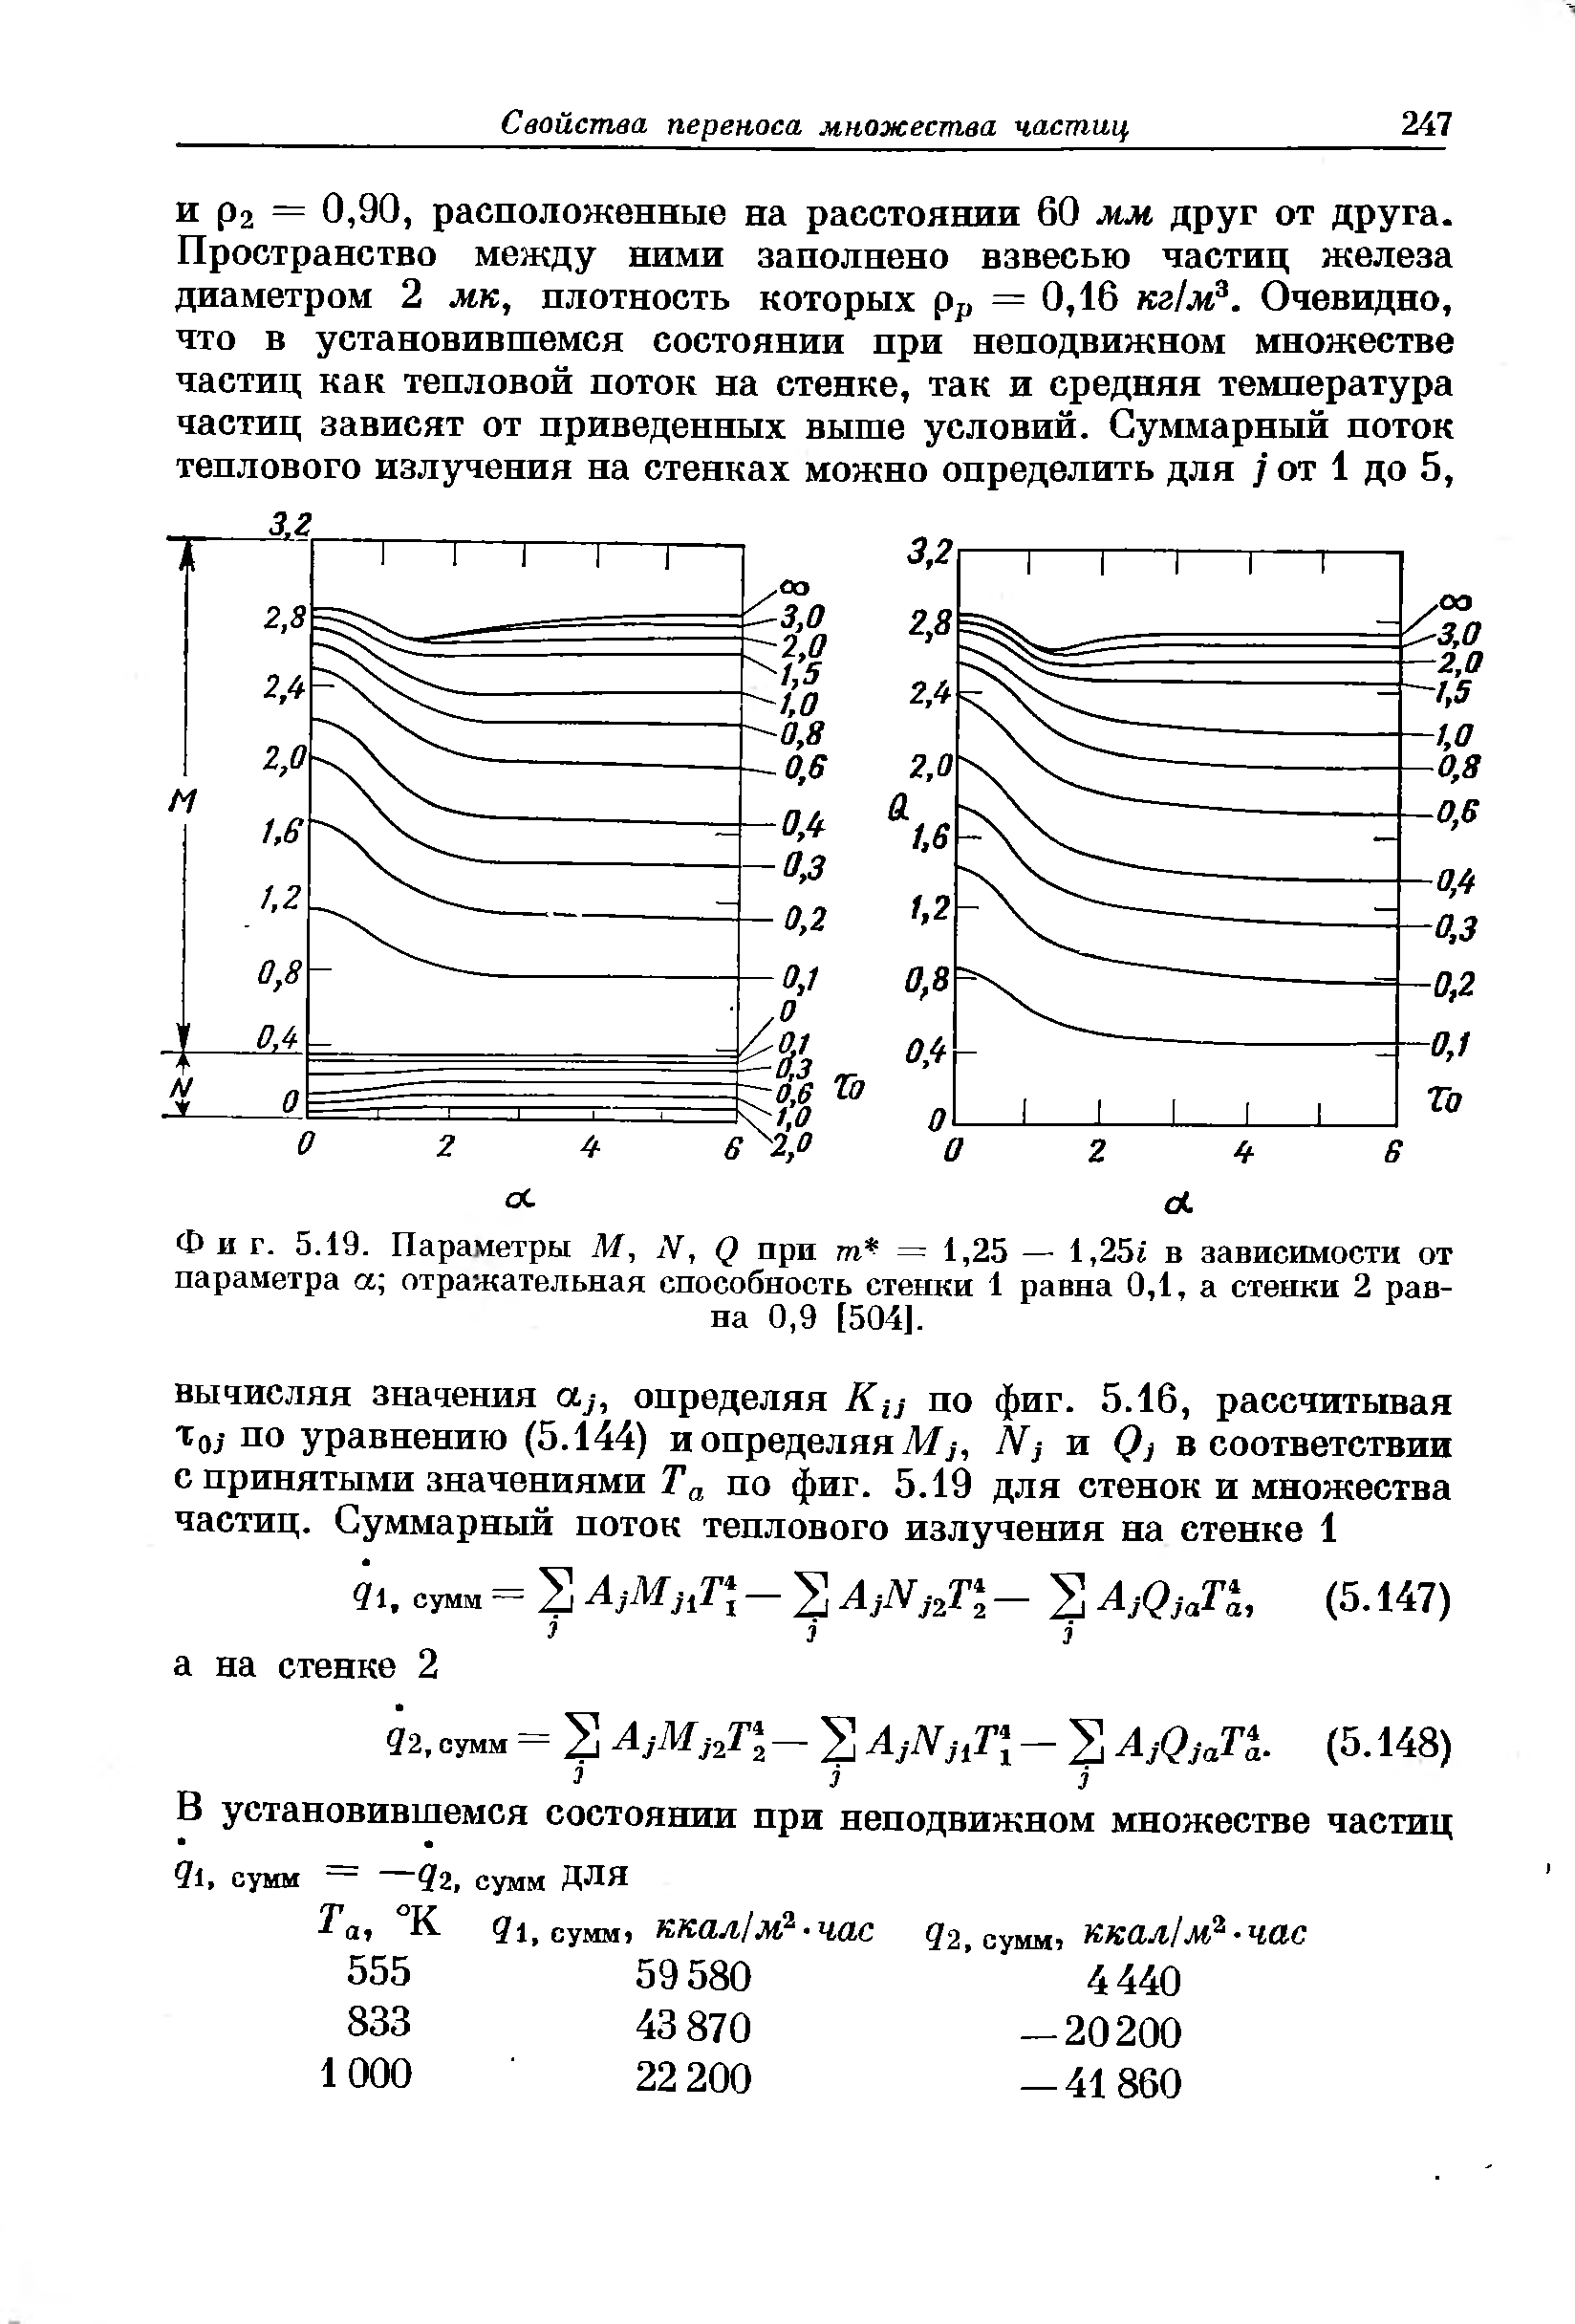 Фиг. 5.19. Параметры М, N, Q при т = 1,25 — 1,25г в зависимости от параметра а отражательная способность стенки 1 равна 0,1, а стенки 2 равна 0,9 [504].
